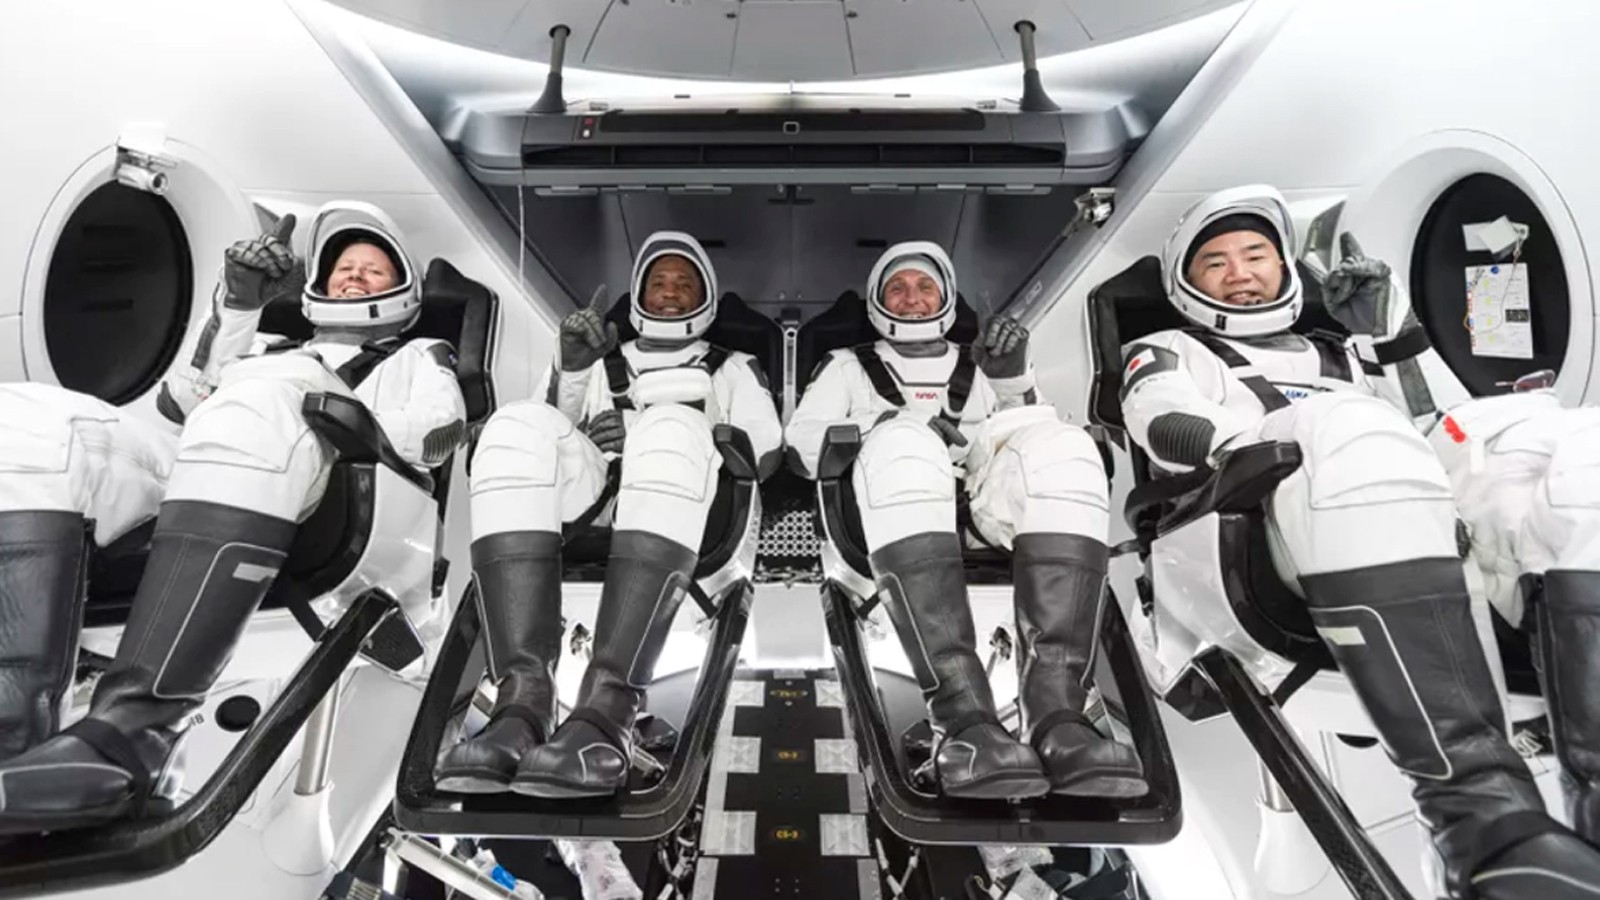 Tàu tên lửa Starship của Elon Musk - Một cuộc cách mạng mới - ảnh 6